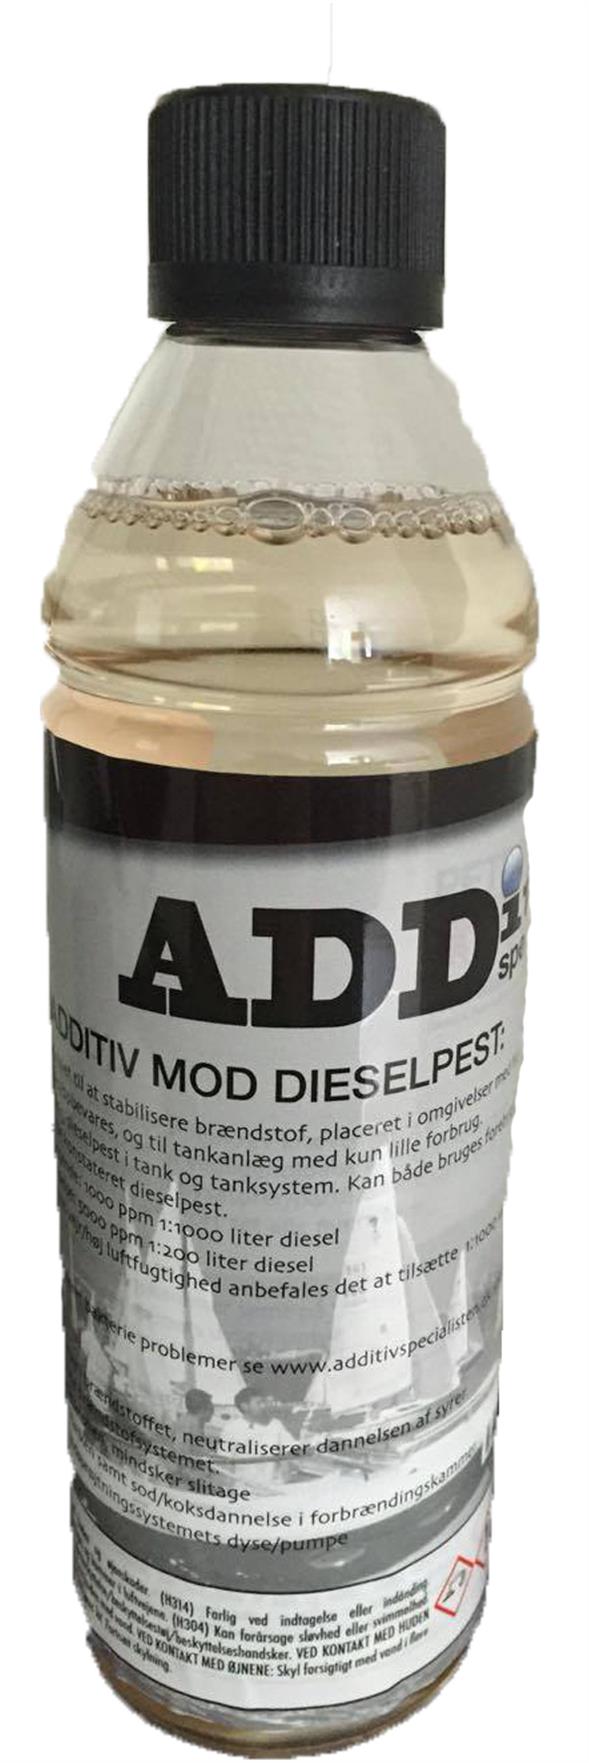 MA3350 Diesel Additiv mod Dieselpest